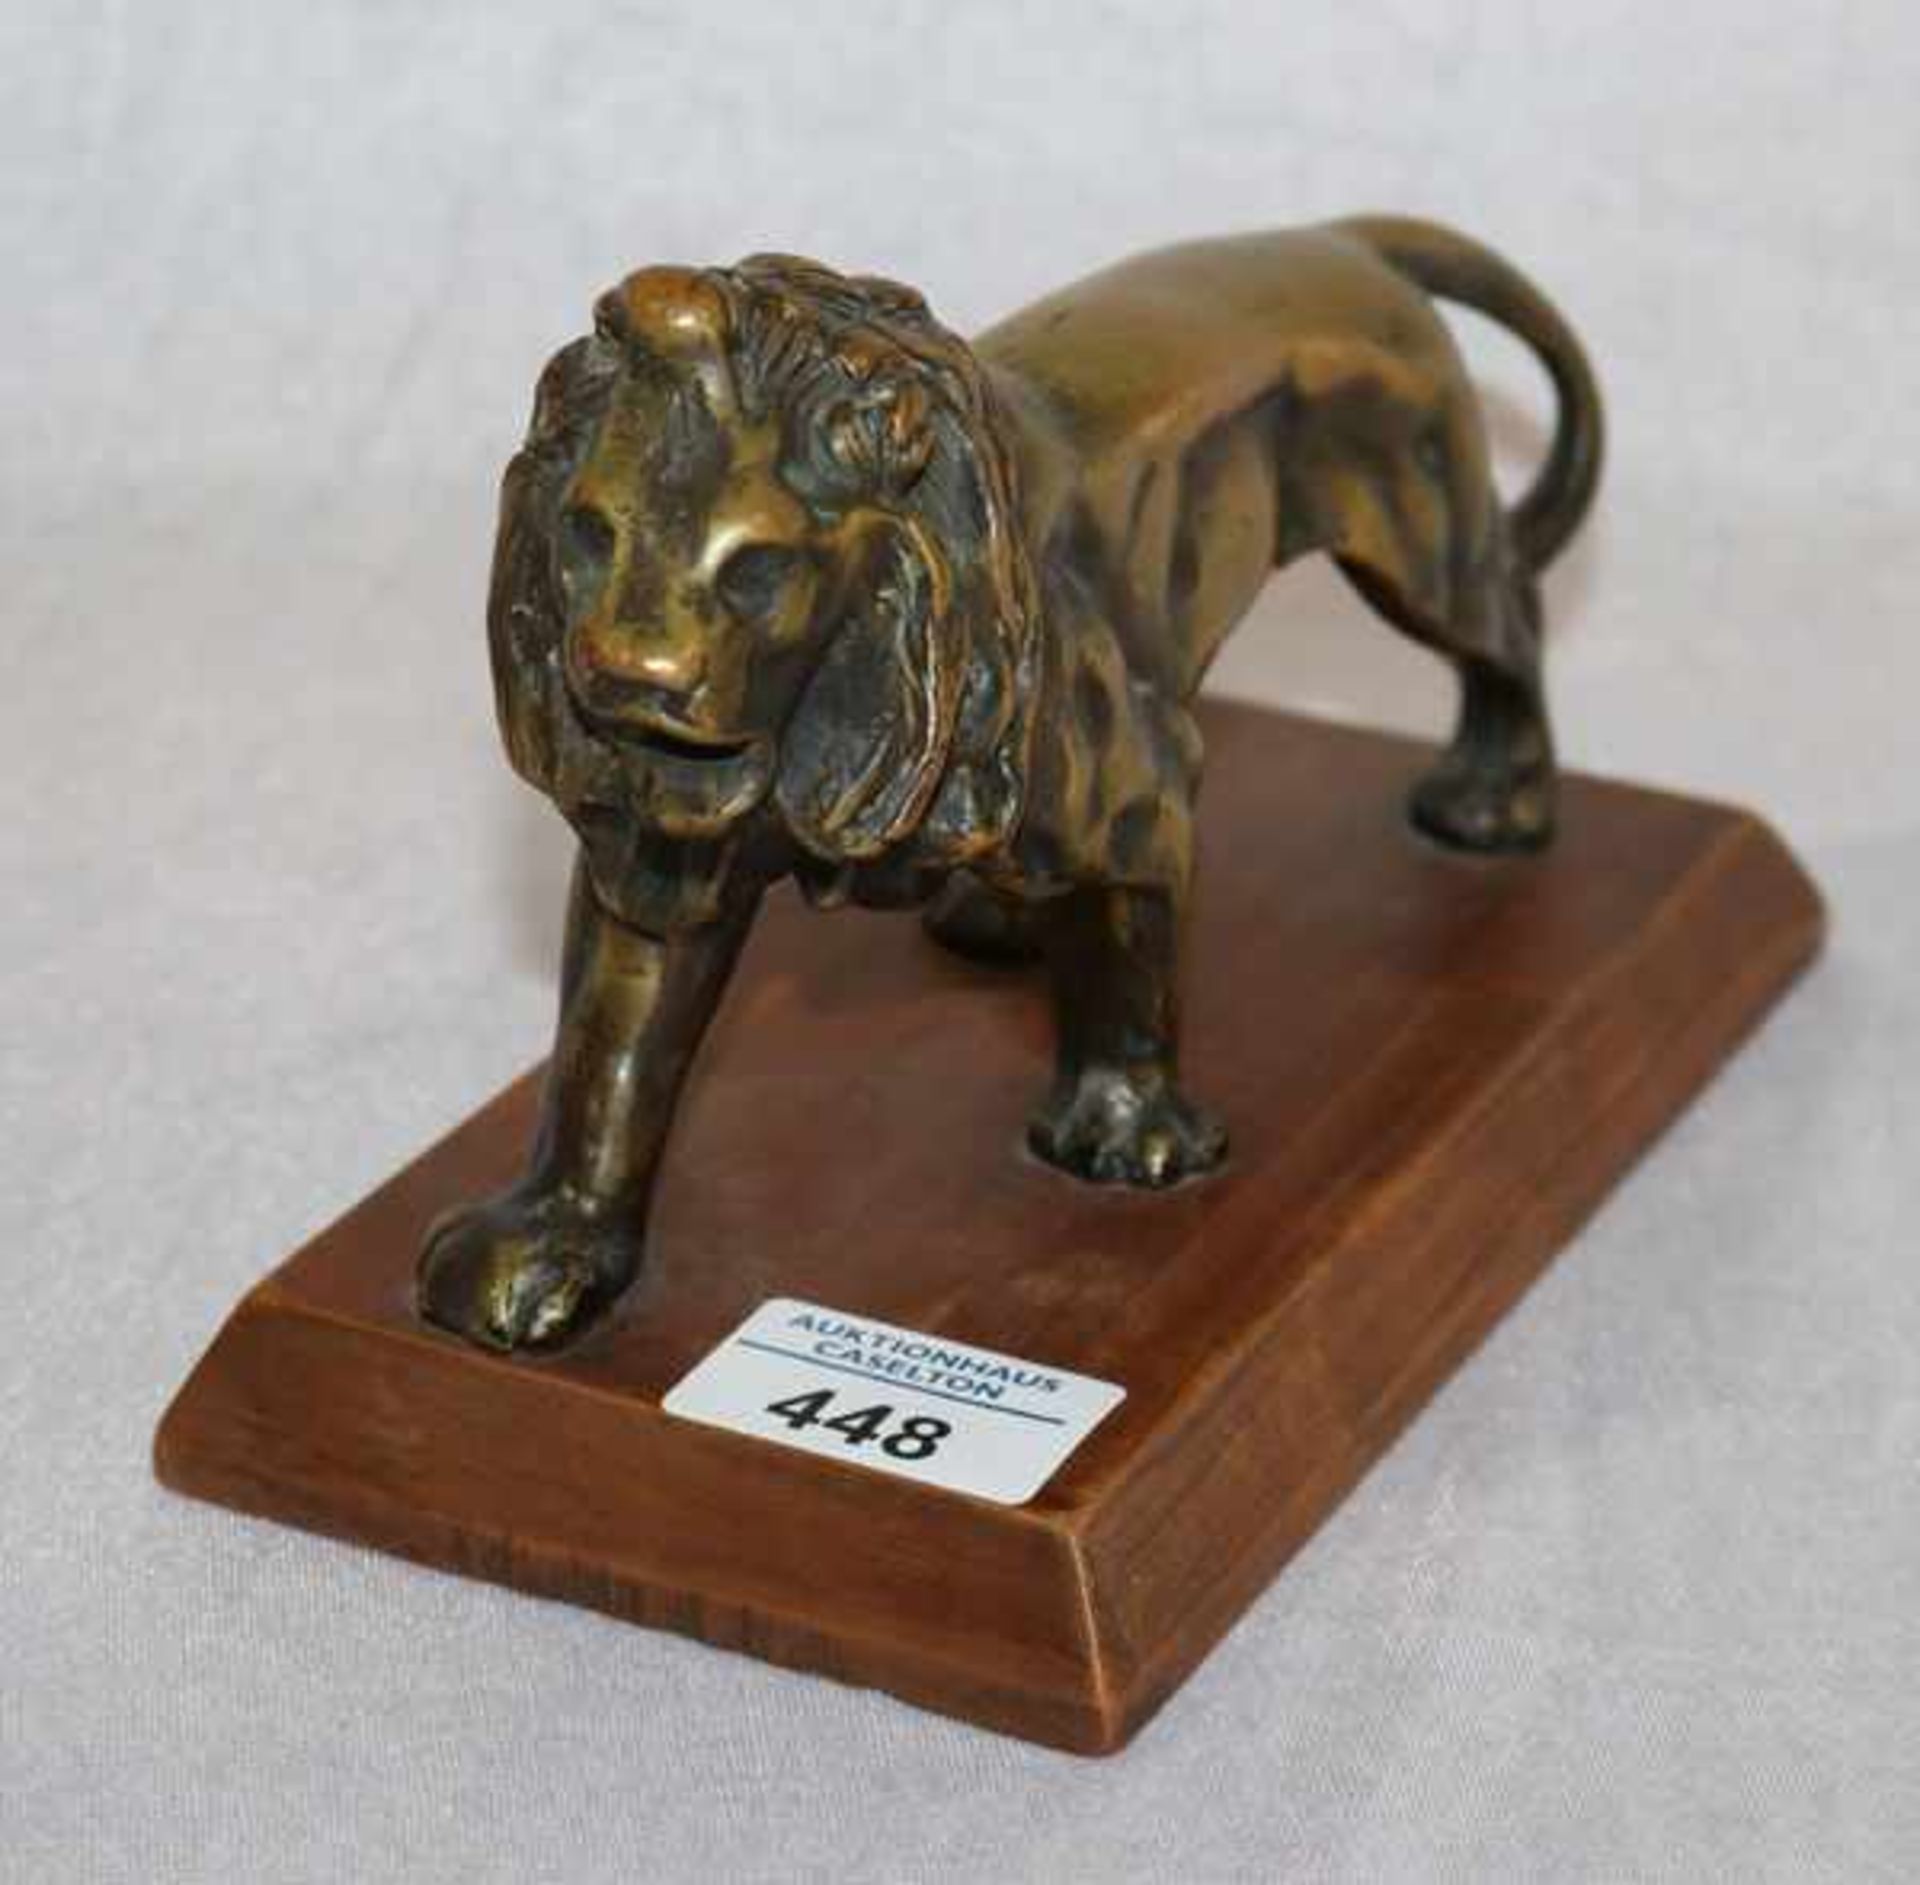 Tierfigur, wohl Bronze, 'Löwe' auf Holzsockel, H 13 cm, B 20 cm, T 10 cm